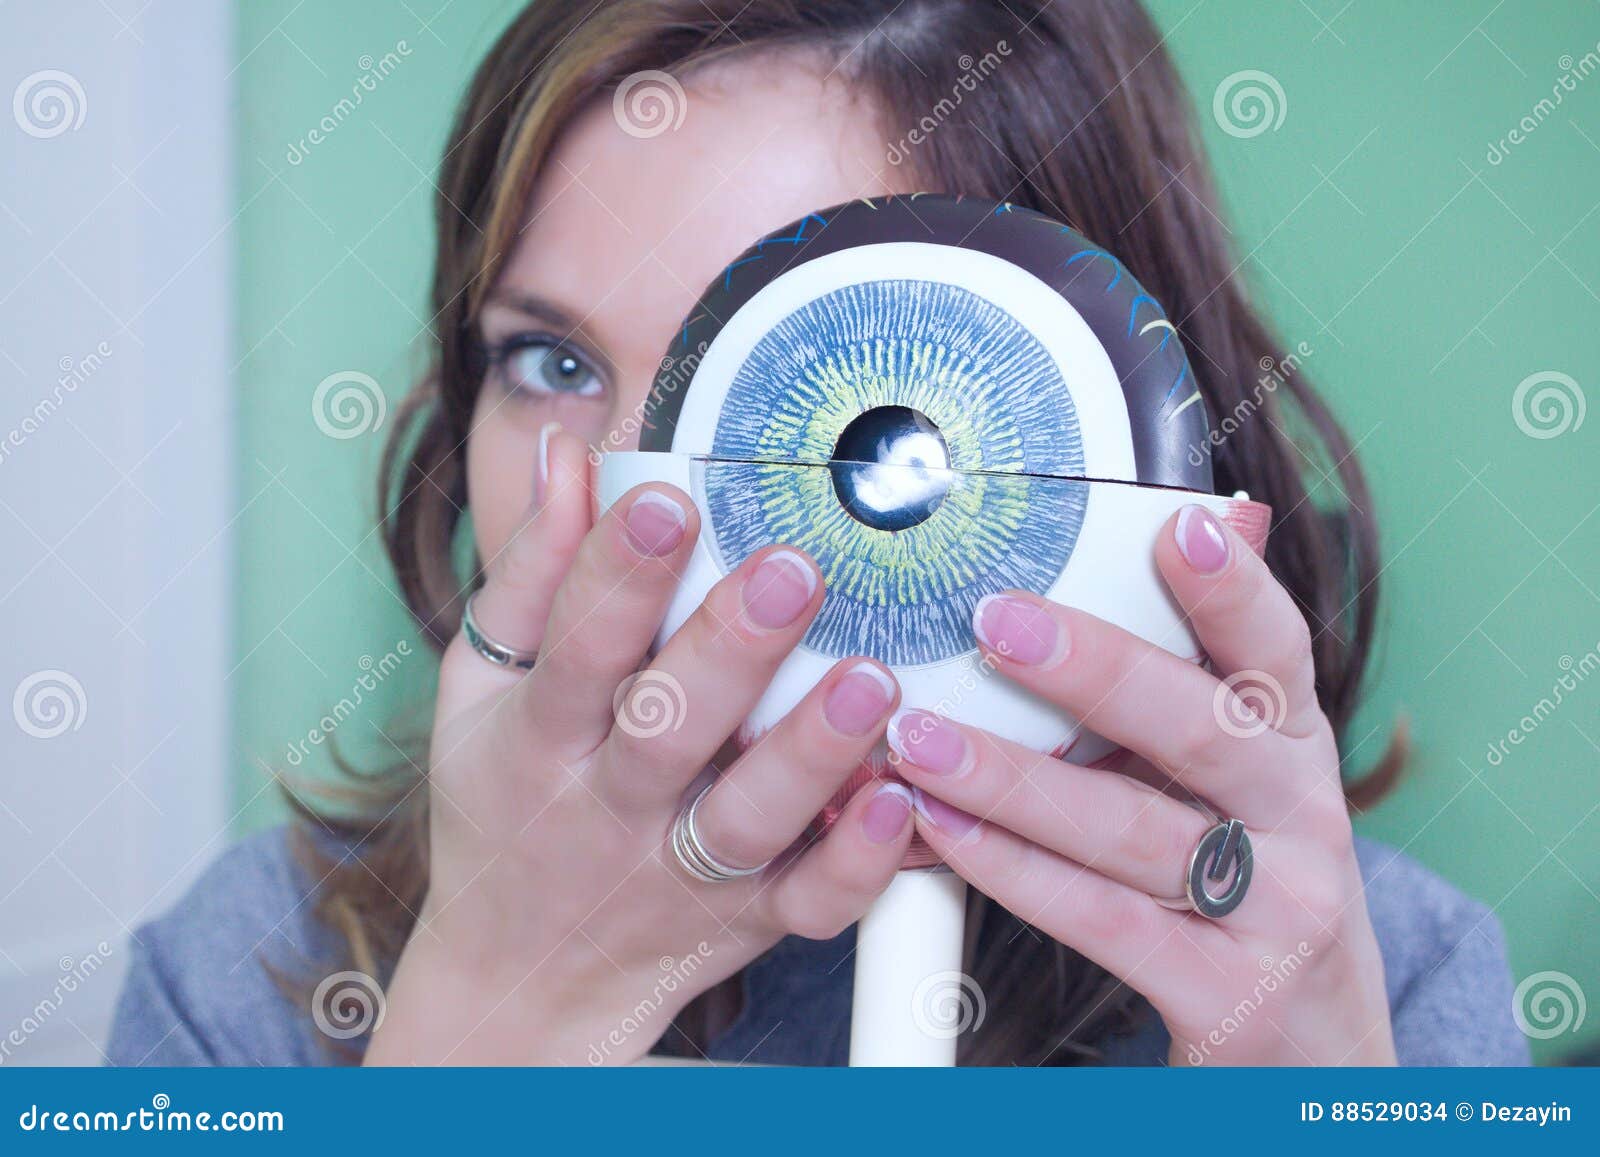 ophthalmology oculus sample closeup